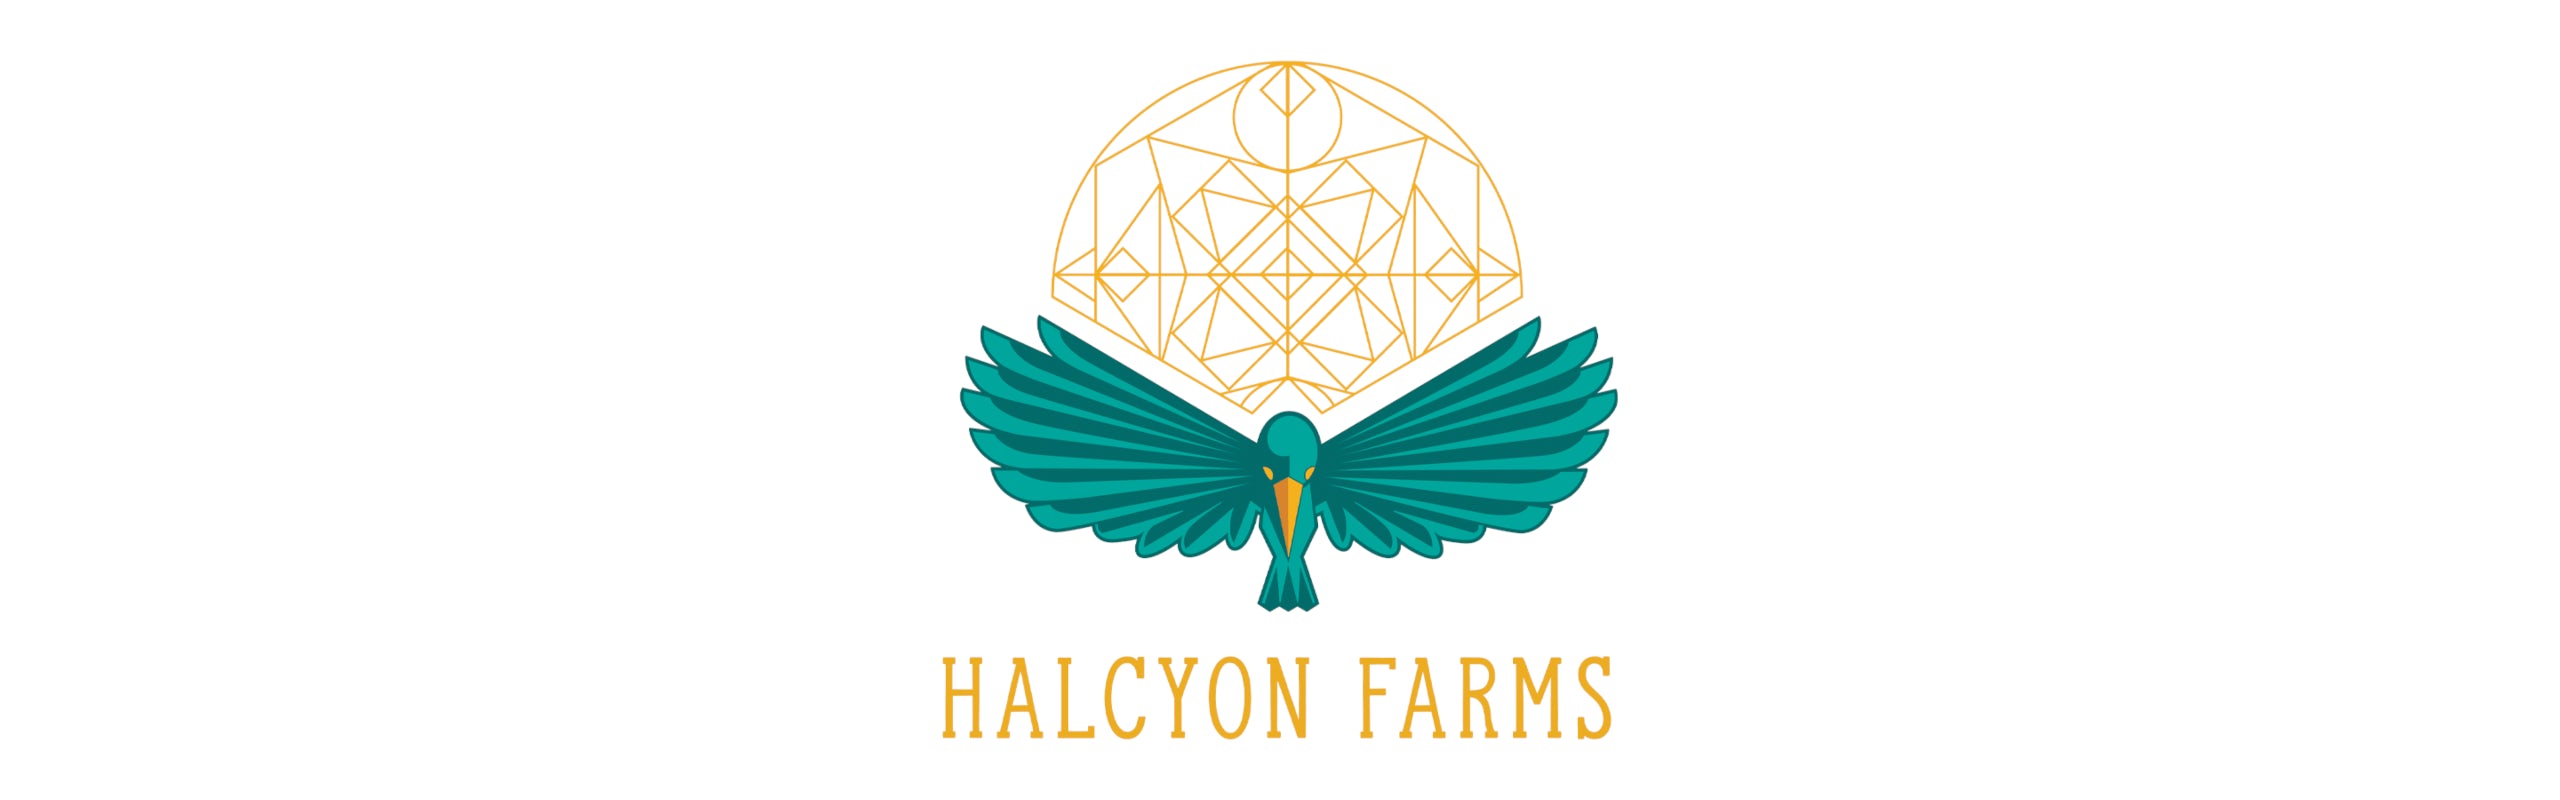 Halcyon Farms banner